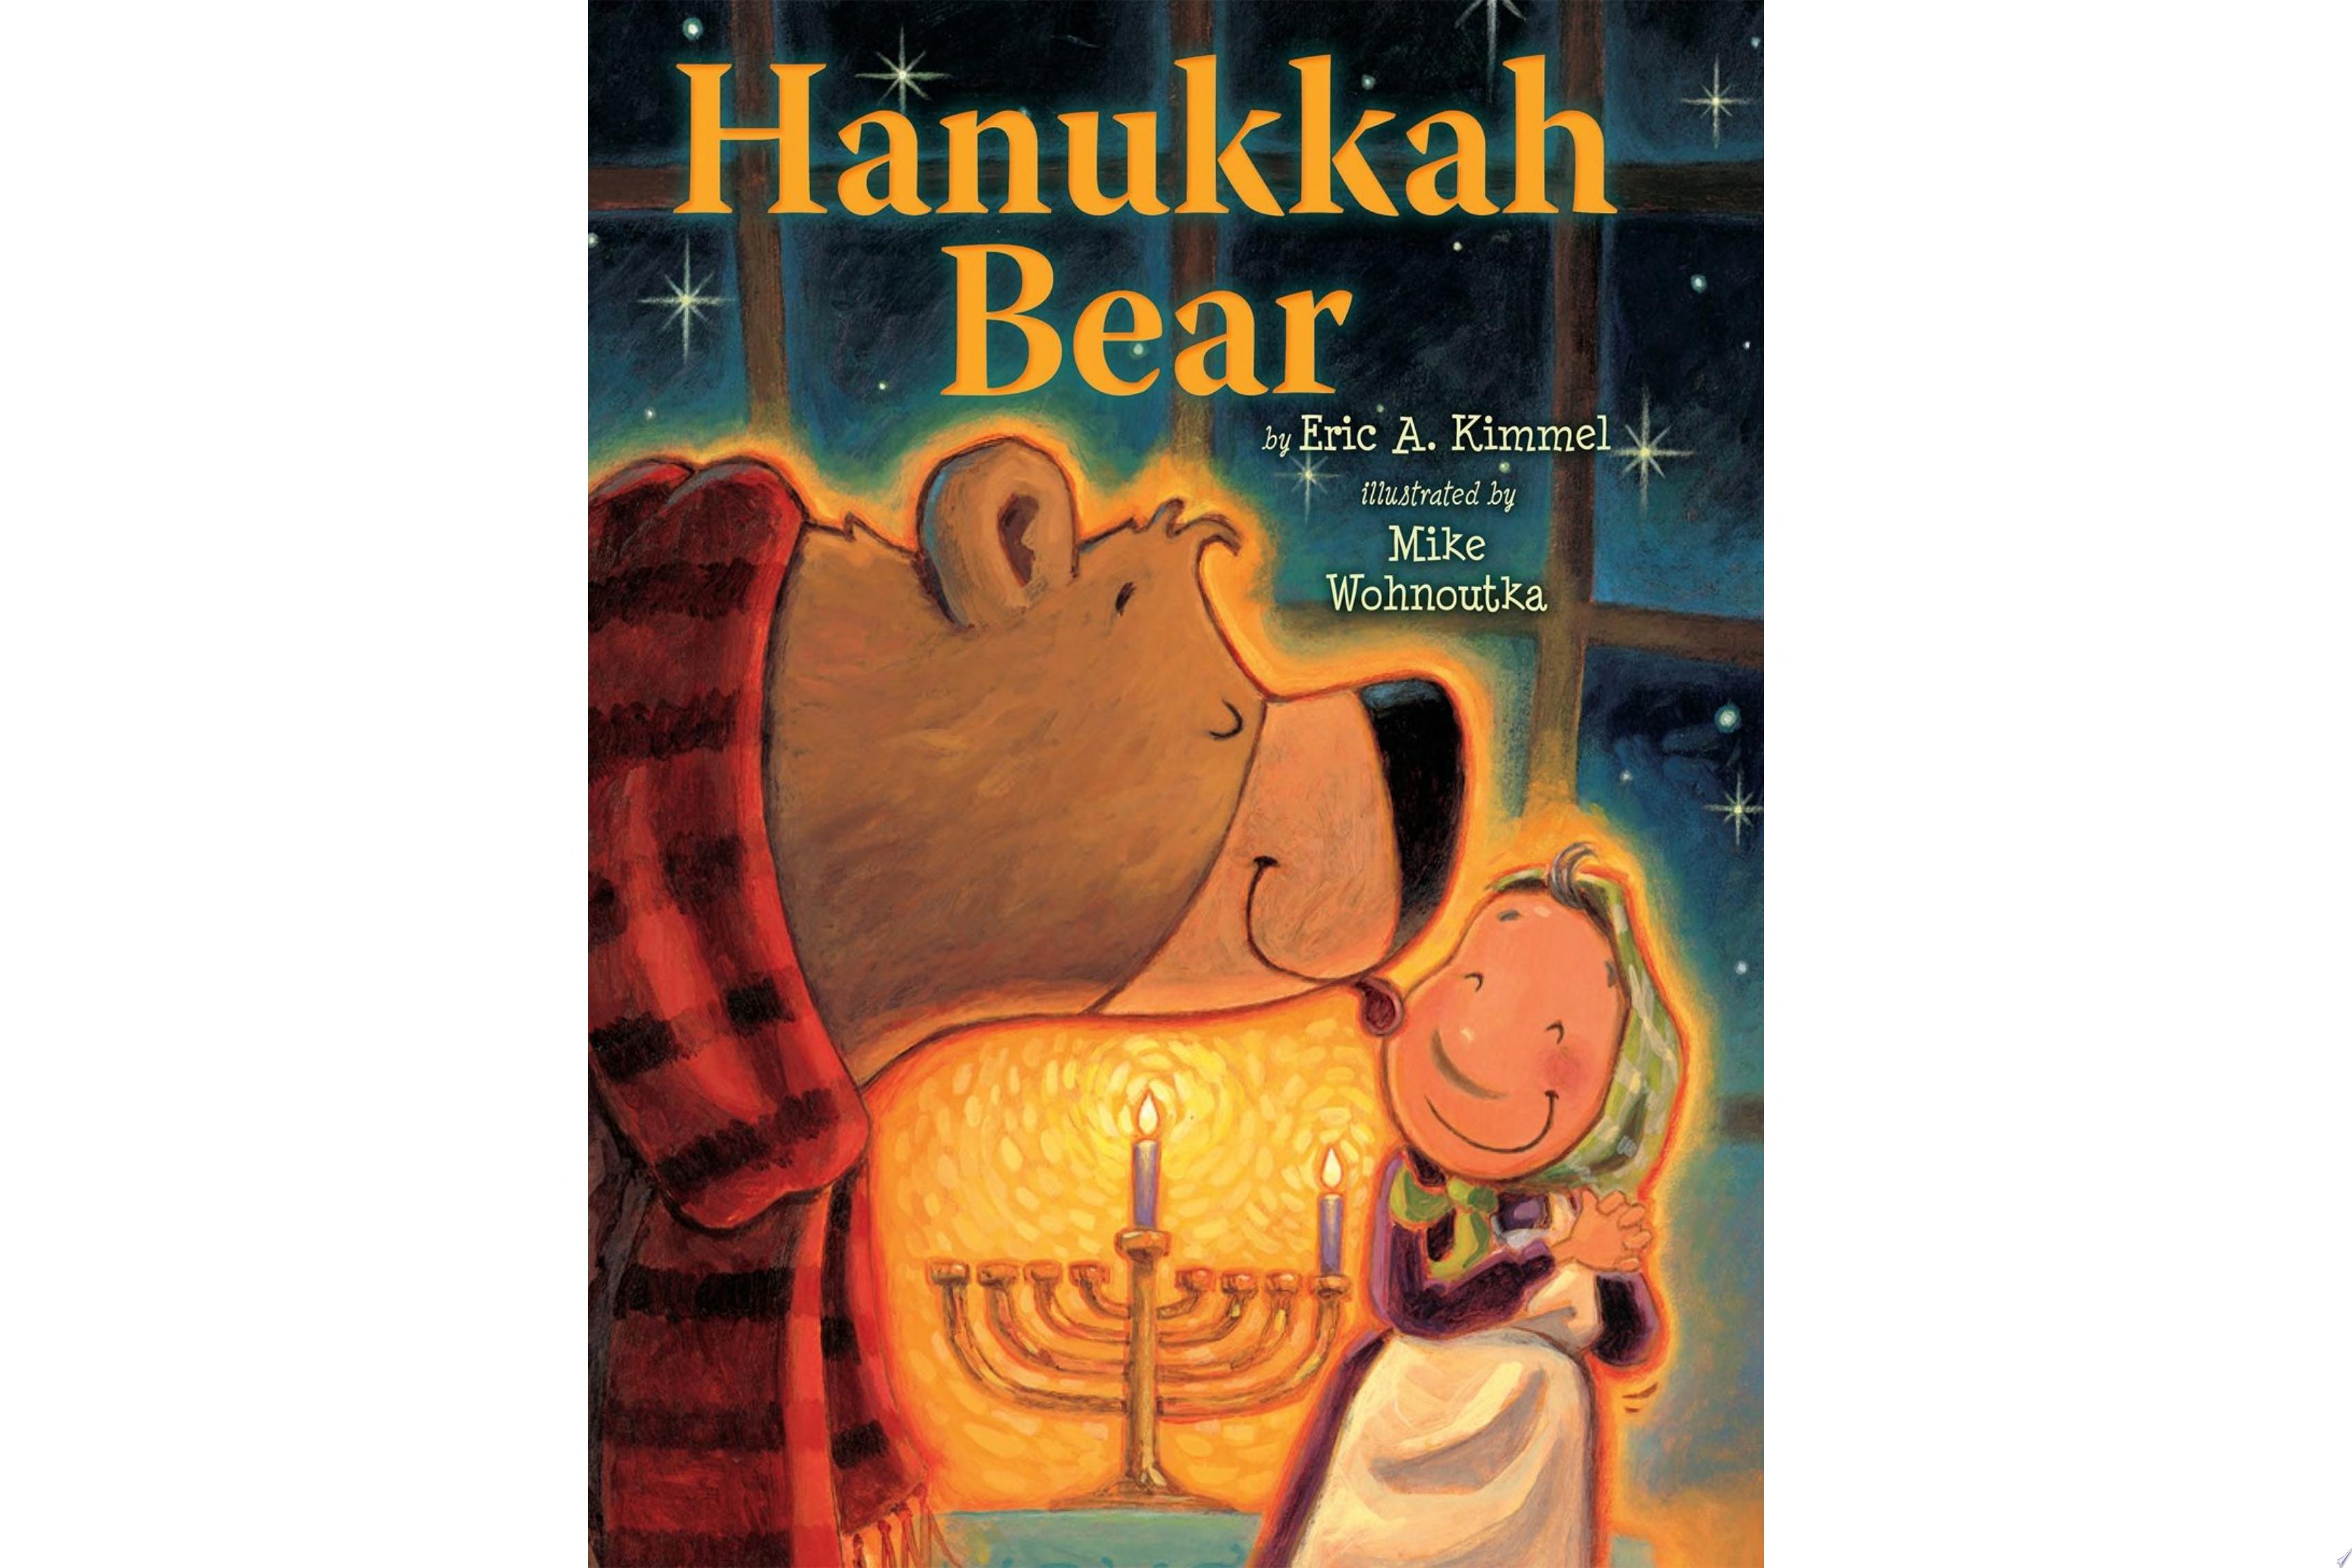 Image for "Hanukkah Bear"